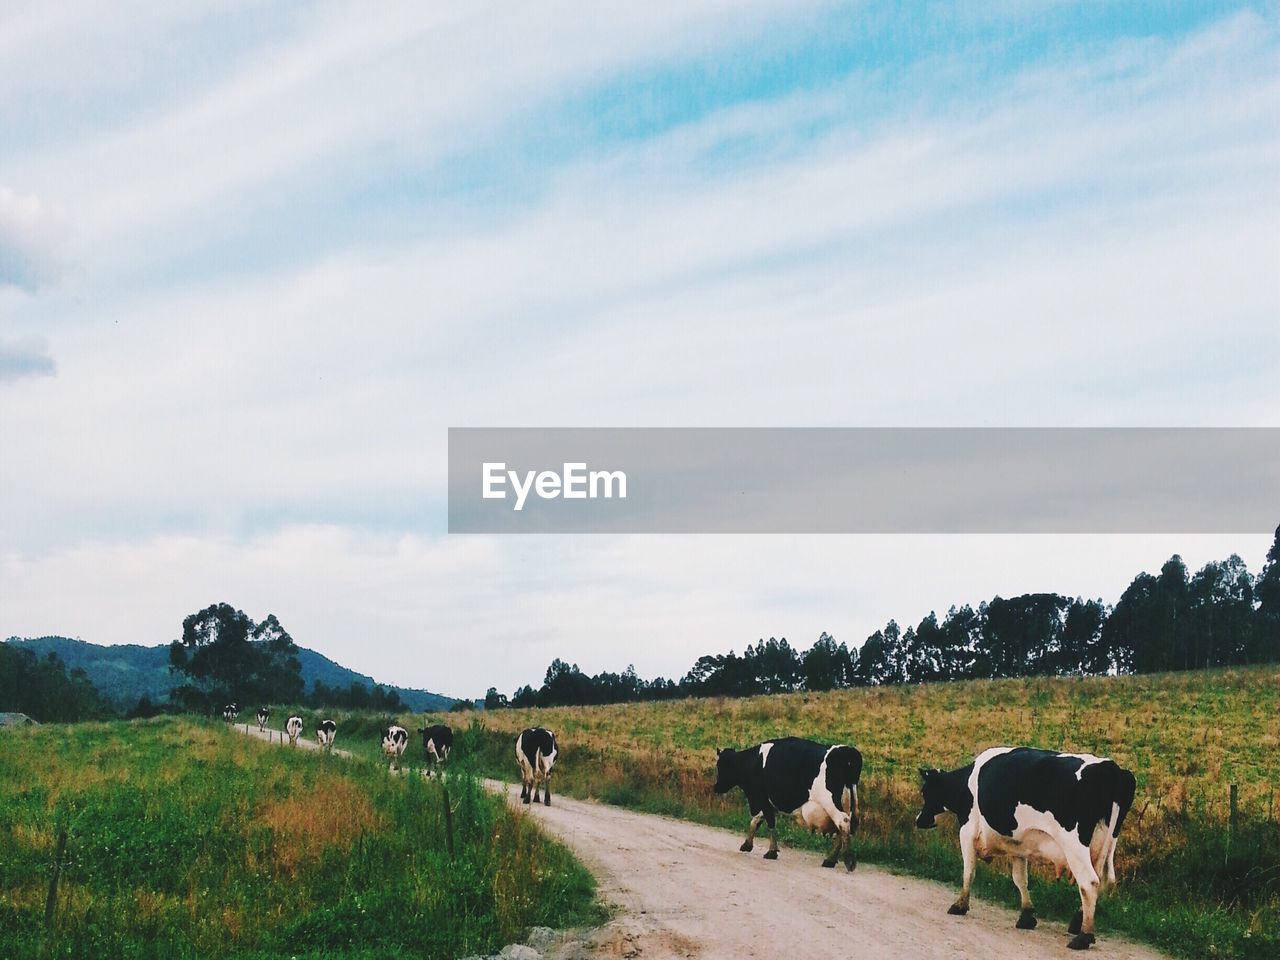 Cows walking on dirt road against sky